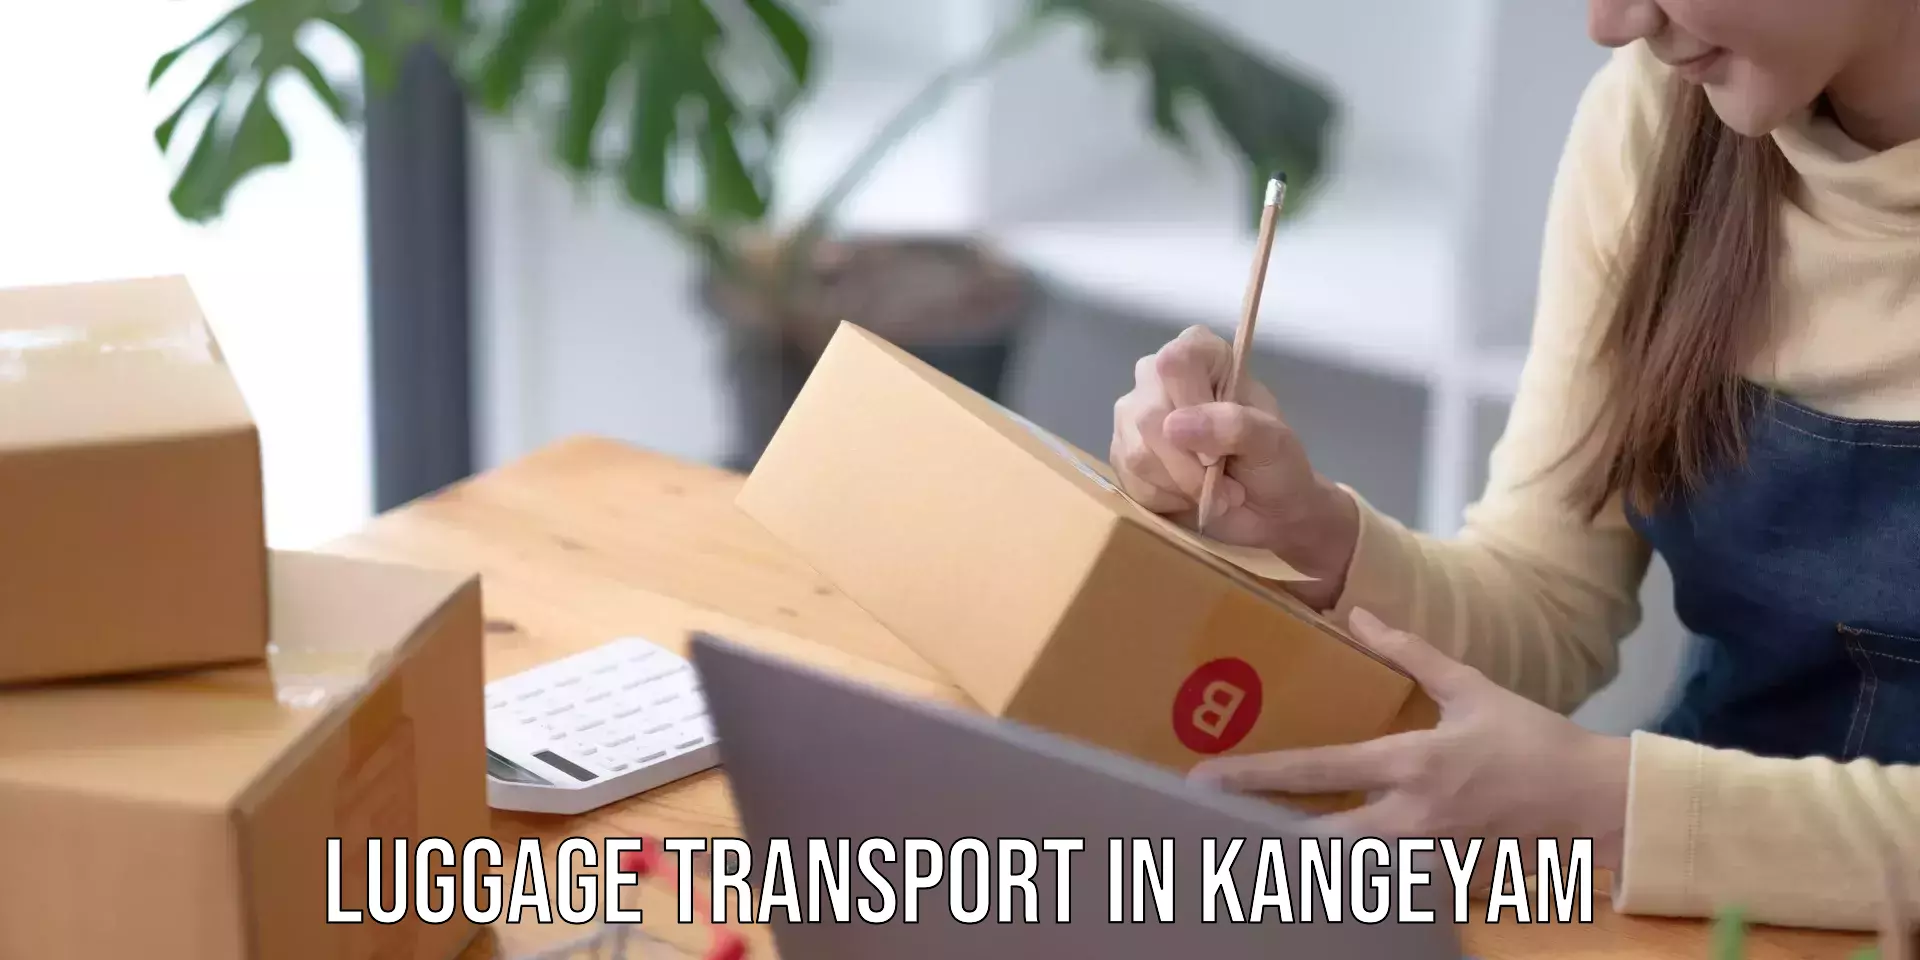 Luggage transfer service in Kangeyam